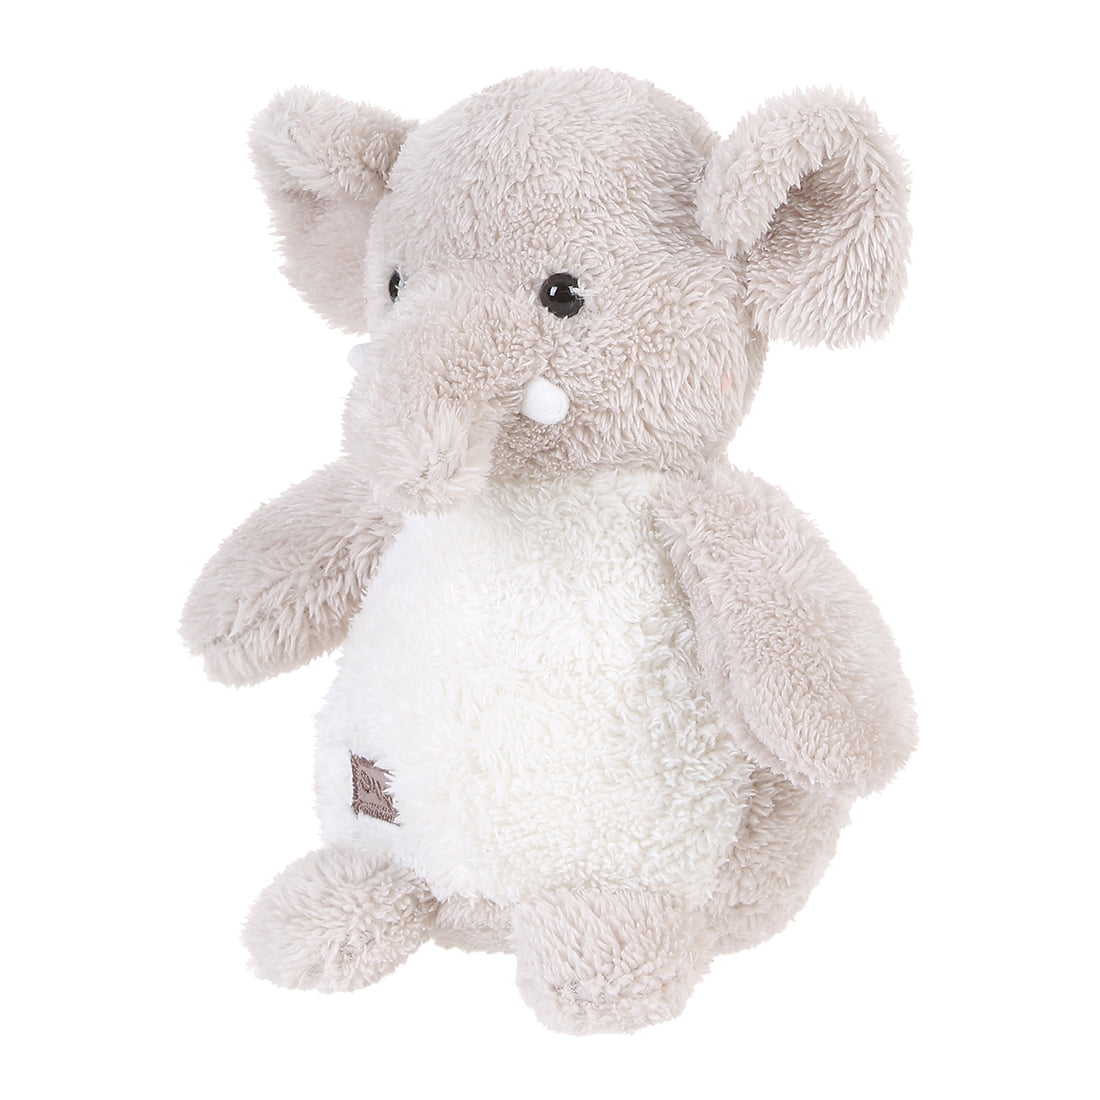  MINISO  Stuffed Animal Elephant Plush  Toy Anime Plush  Toy 